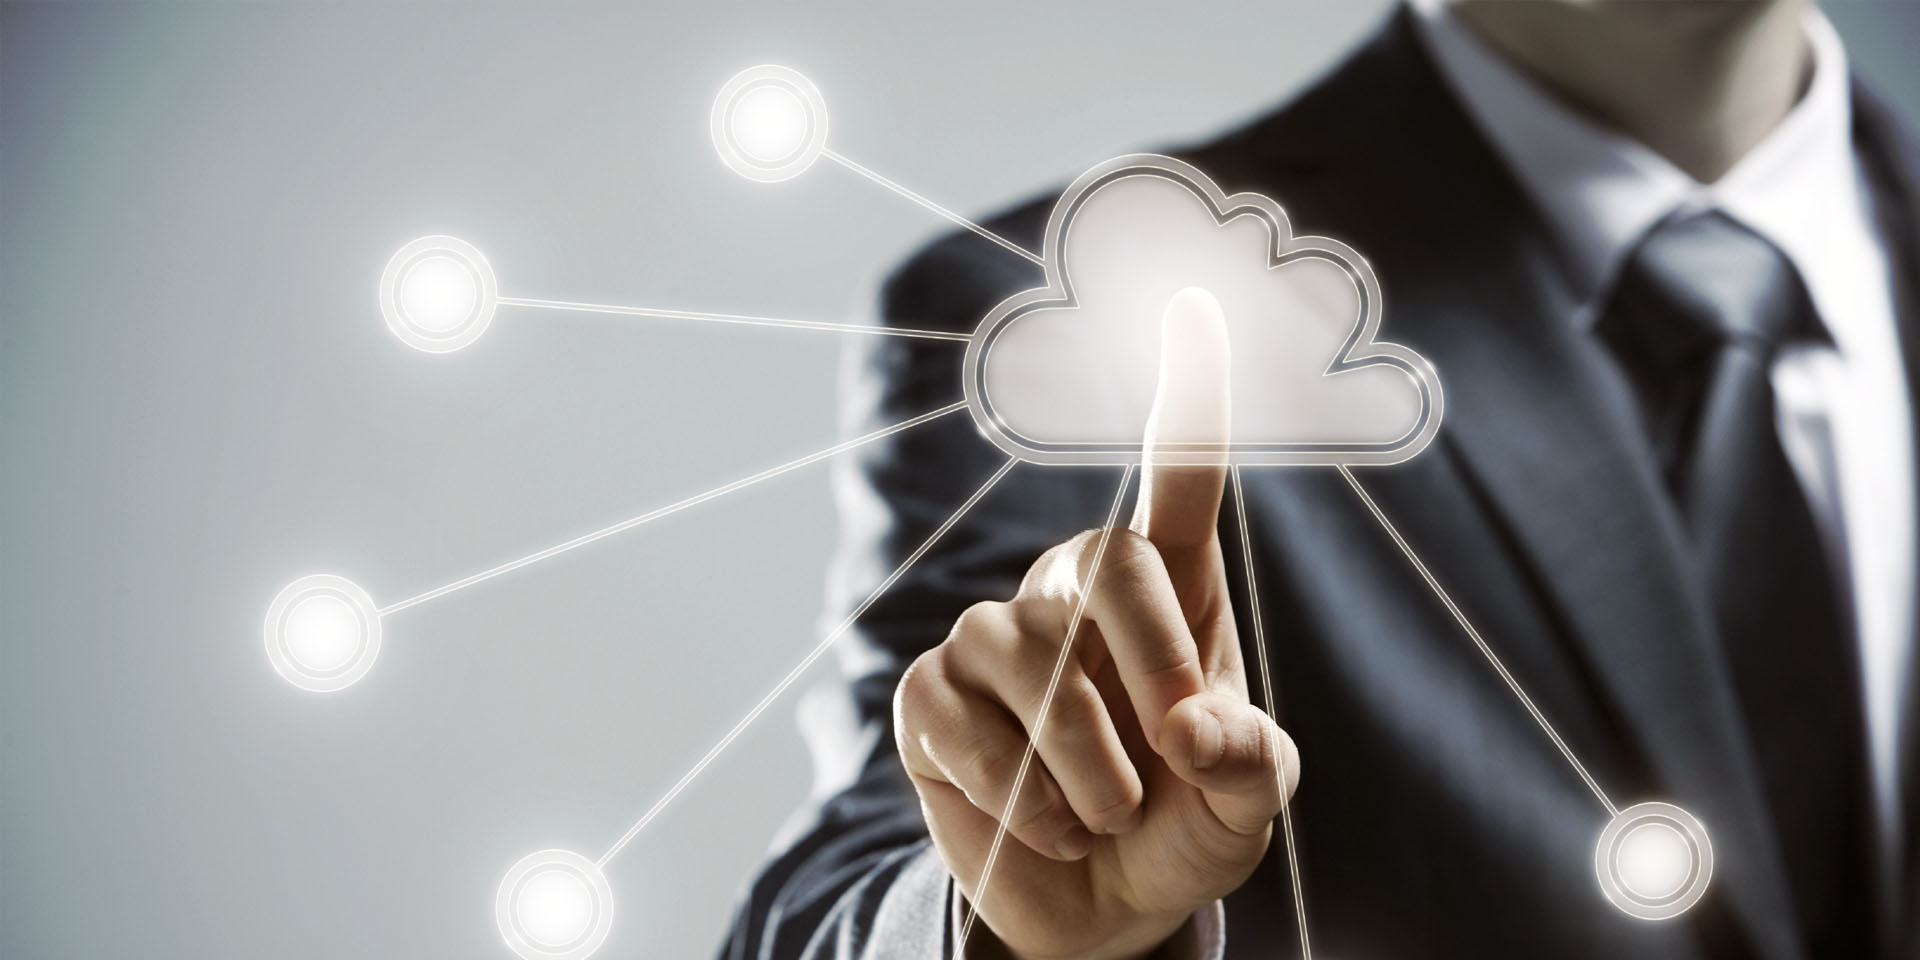 El almacenamiento en la nube consiste en guardar la información de una empresa en servidores externos a ella, permitiendo un alojamiento de los datos mucho más seguro y accesible